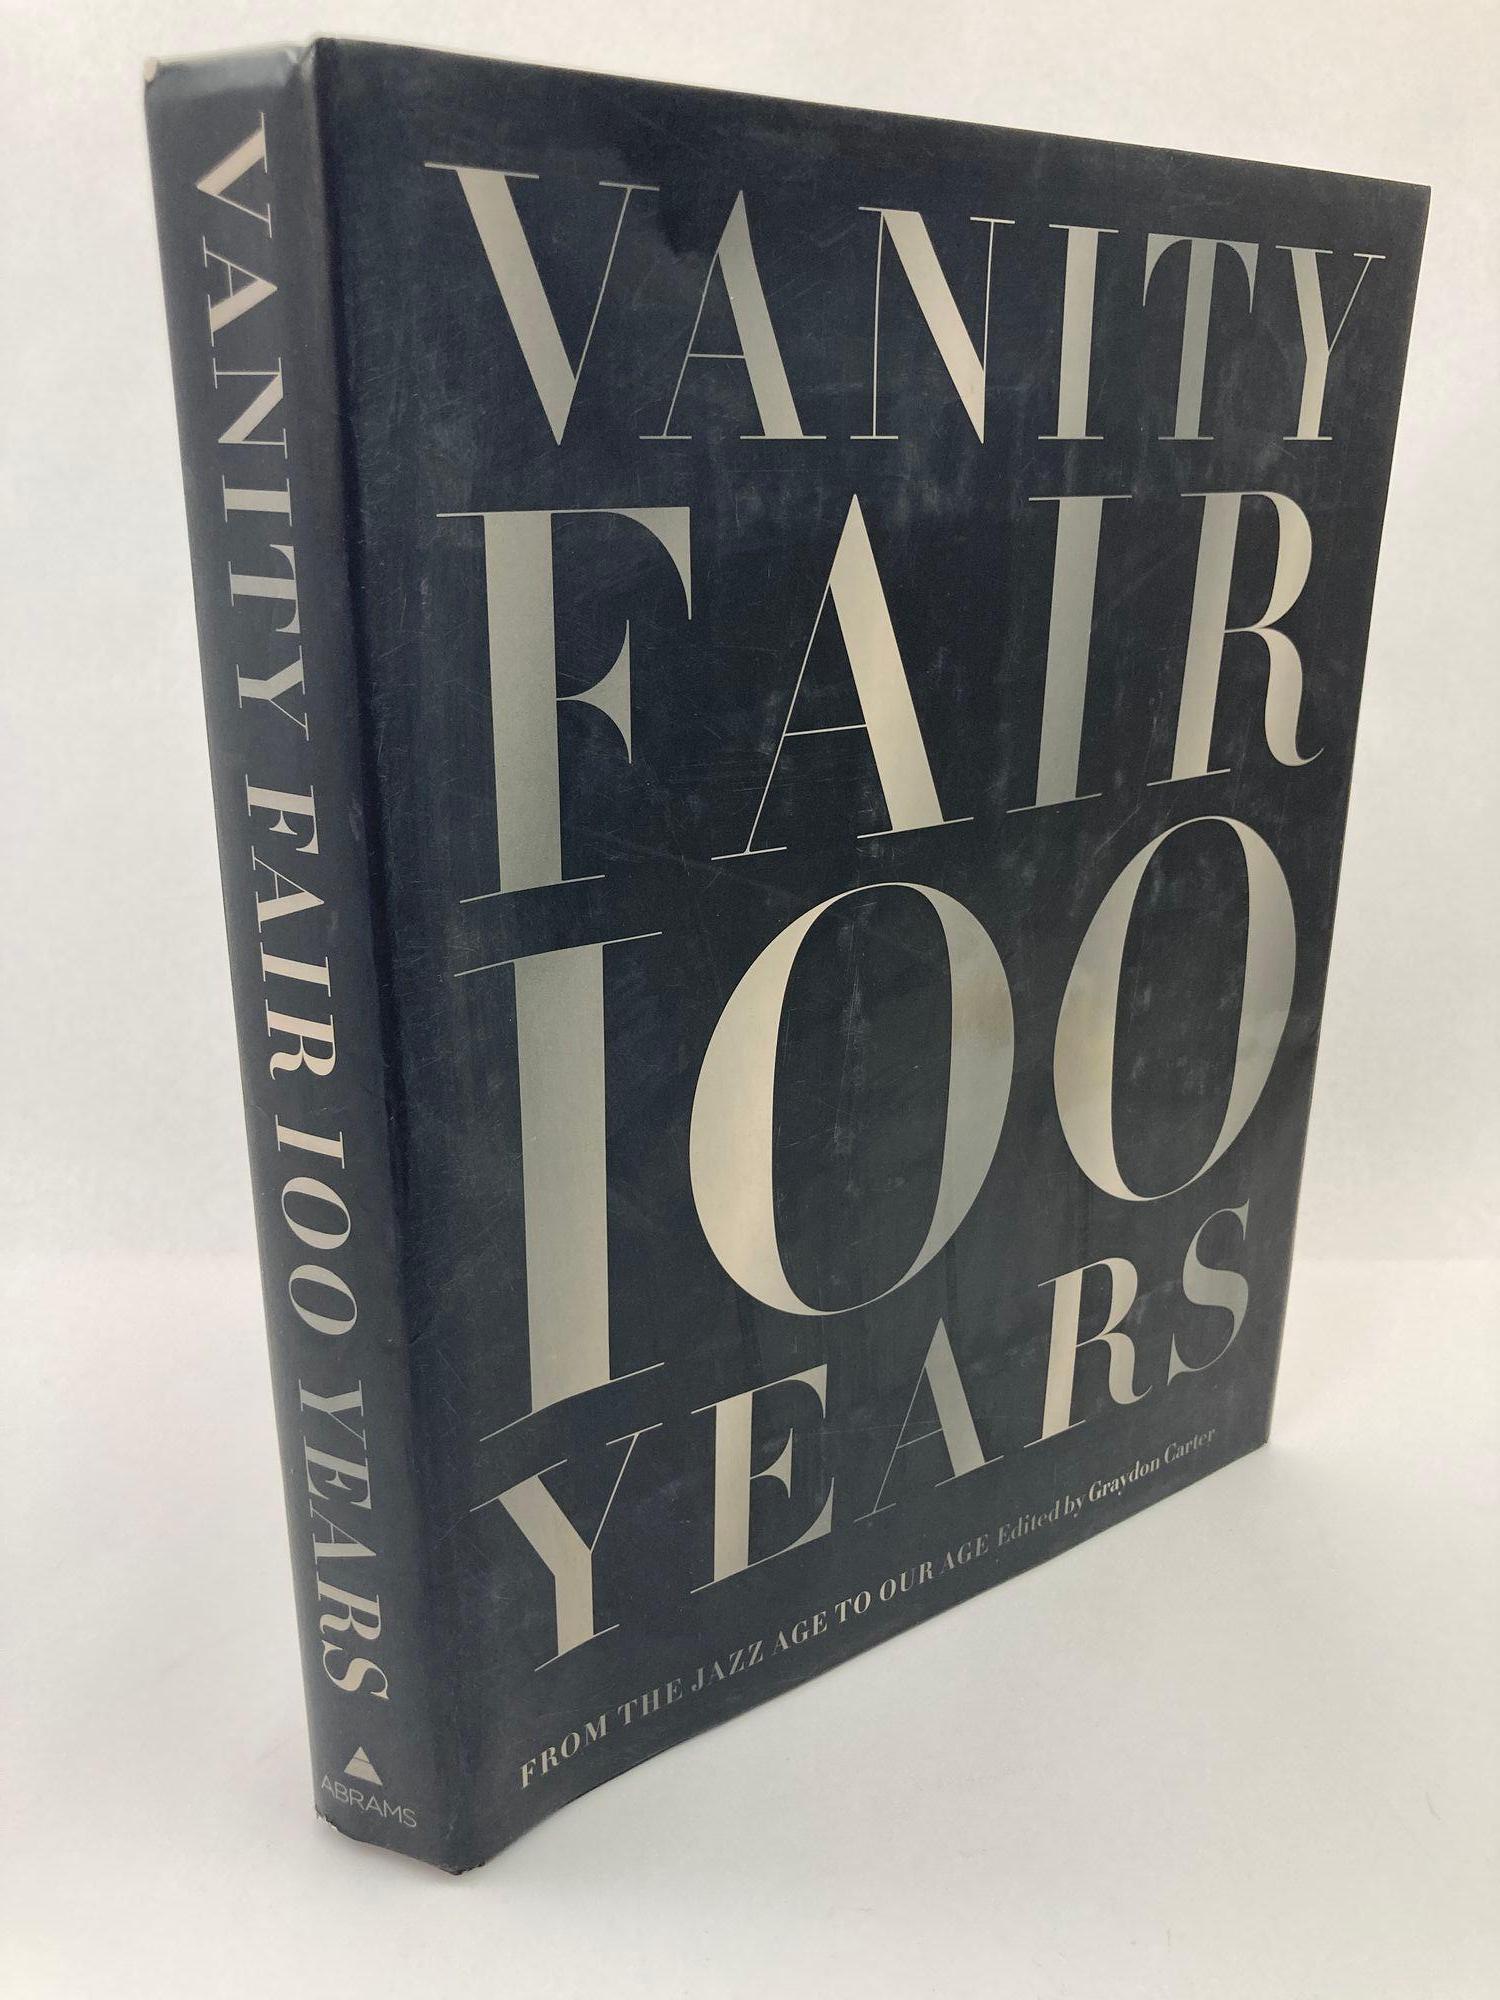 Vanity Fair : 100 Years, From the Jazz Age to Our Age, Graydon Carter, 2013.
Vanity Fair 100 Years présente un siècle de personnalité et de pouvoir, d'art et de commerce, de crise et de culture, qu'elle soit de haut ou de bas étage.
Dans ce